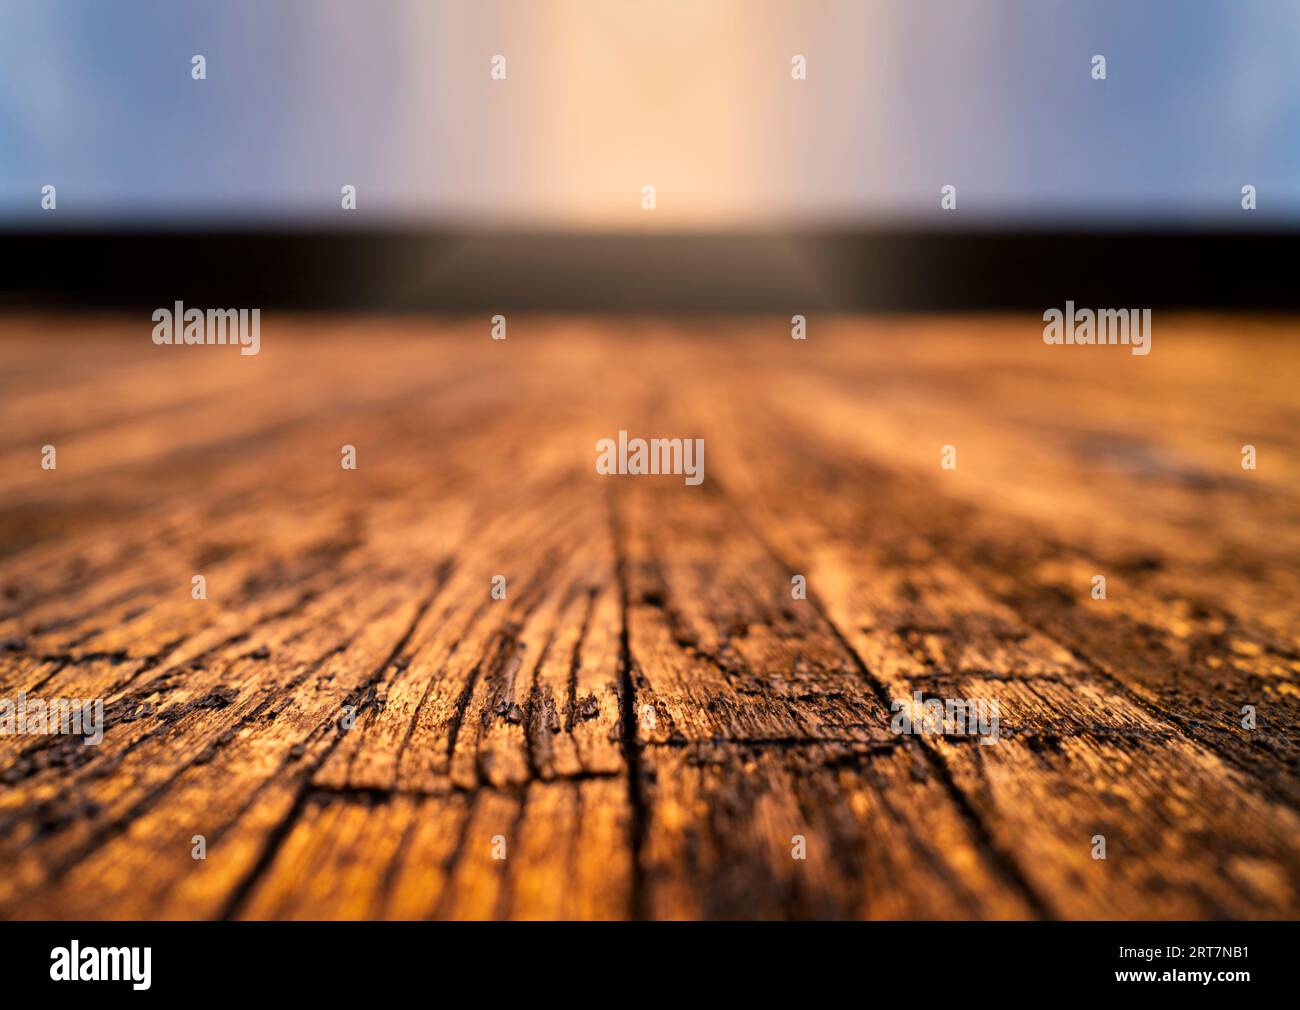 Holzlatten in warmen Tönen mit viel Textur und geringer Feldtiefe. Hintergrund- und Vorlagenkonzept. Stockfoto